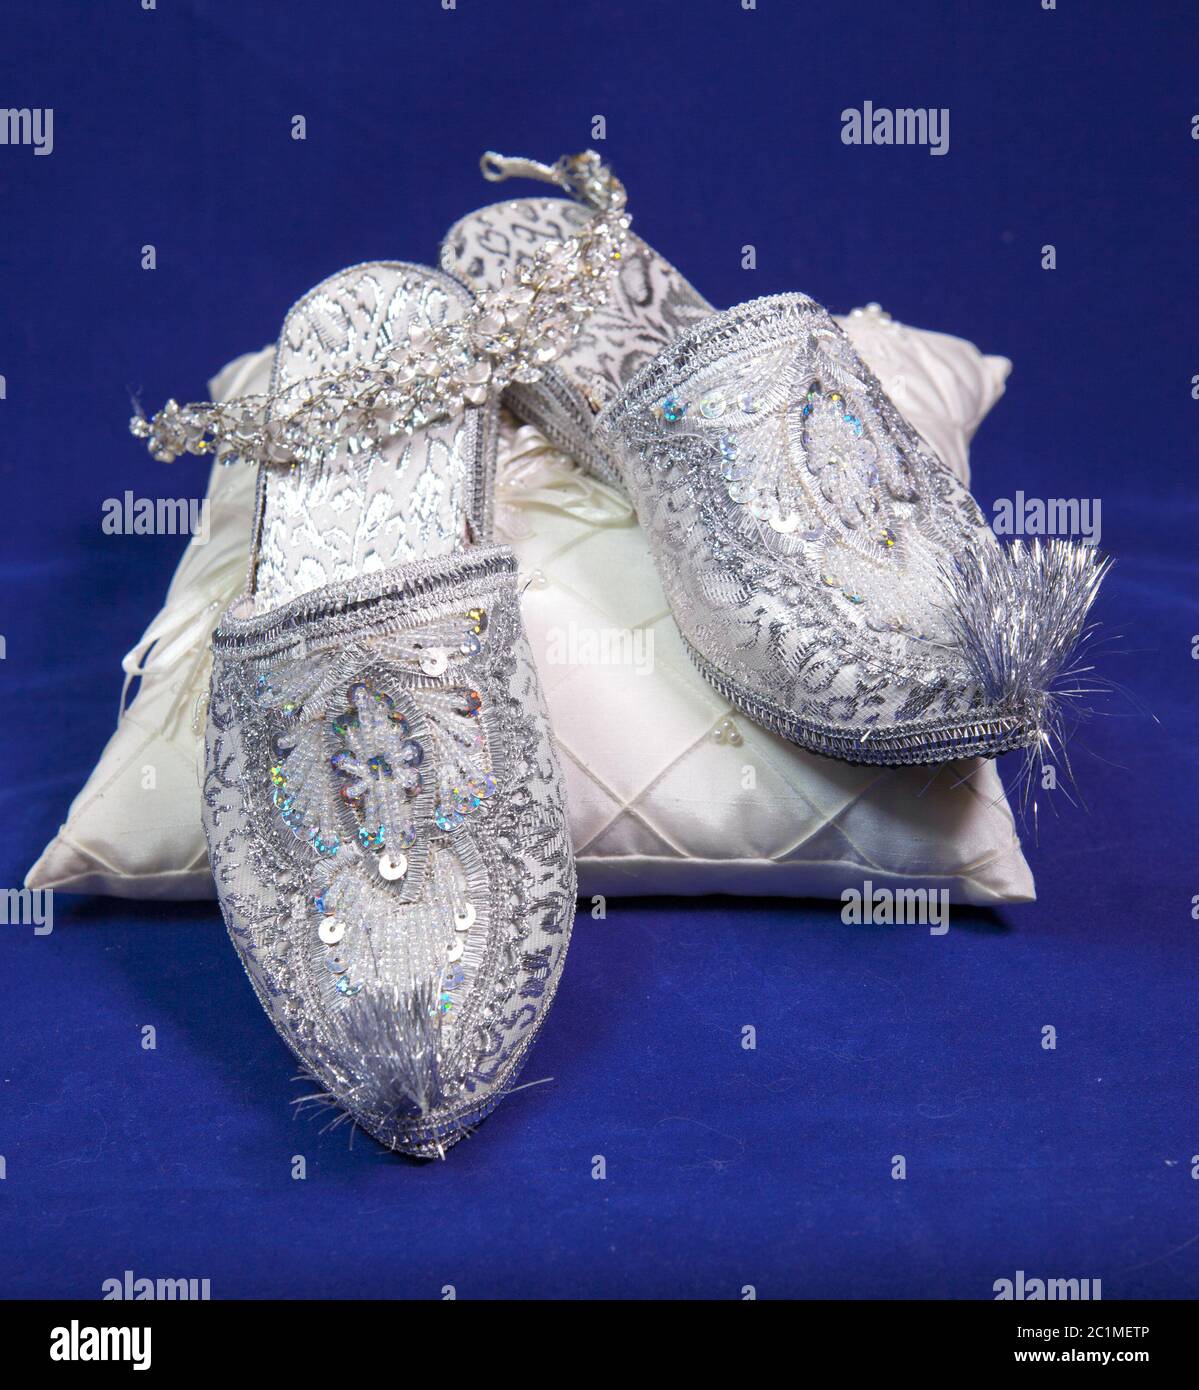 chaussures de mariage style oriental sur velours bleu Banque D'Images